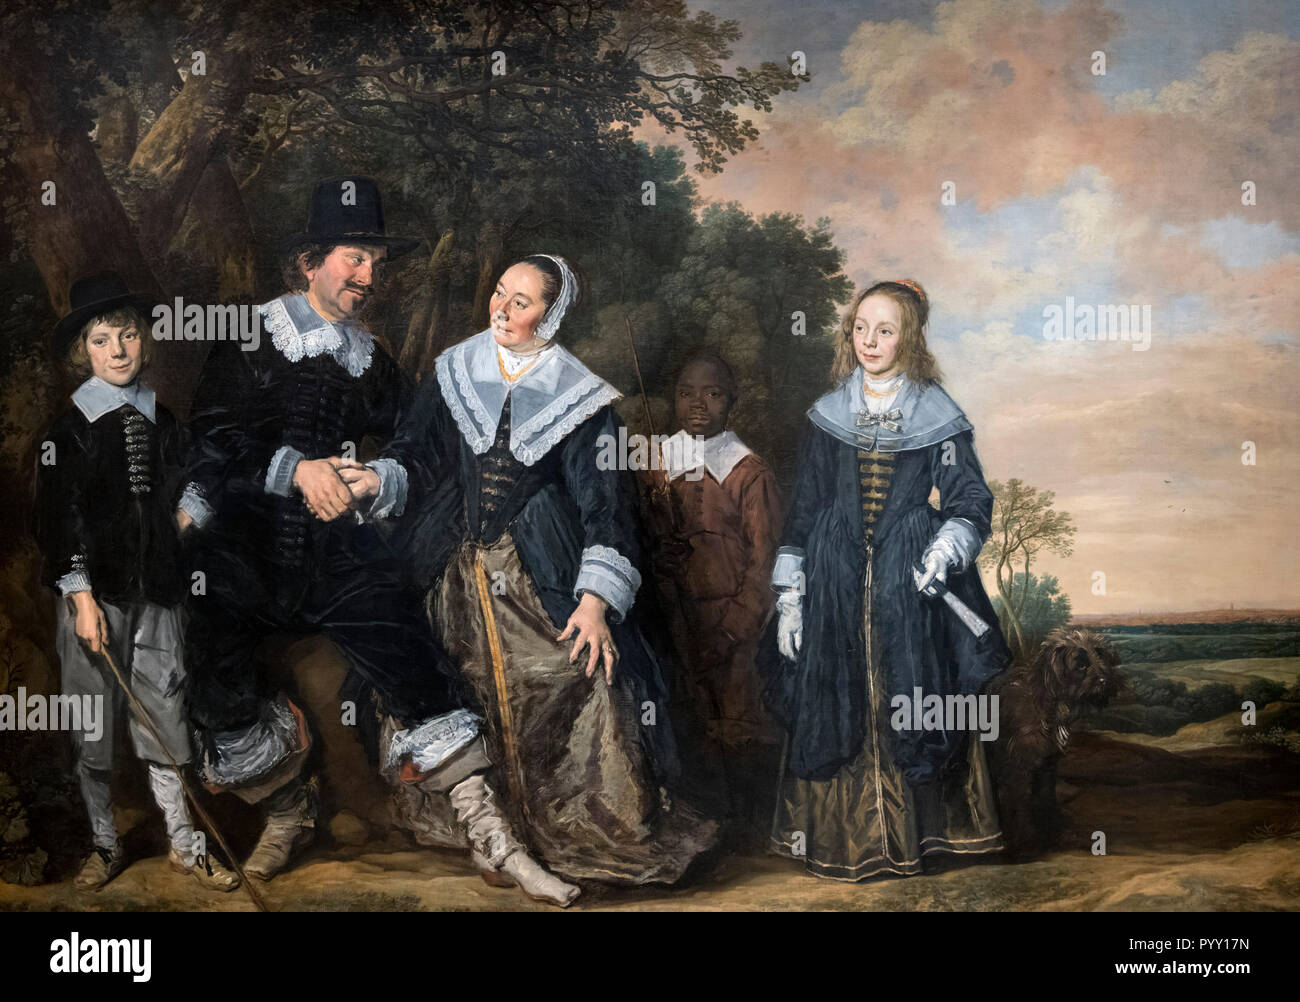 Groupe familial dans un paysage par Frans Hals (c.15823-1666), huile sur toile, c.1645-8 Banque D'Images